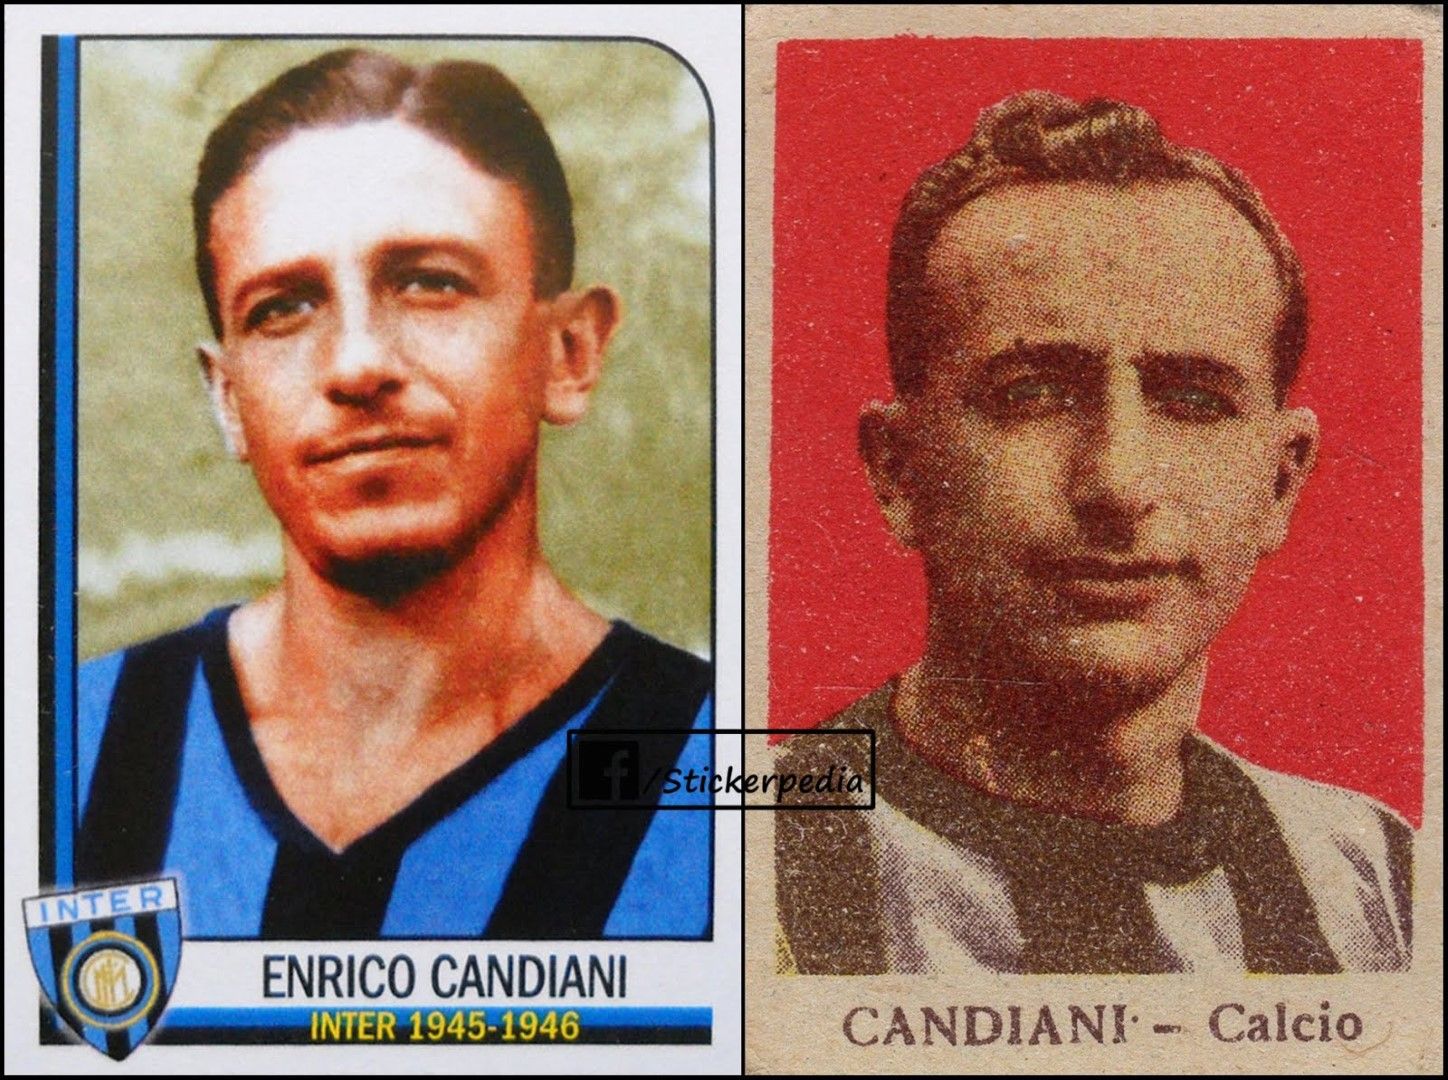 Енрико Кандиани играе по един сезон в трите гранда в следвоенните години (1945-1950 г.), а обикаля и още отбори в кариерата си.